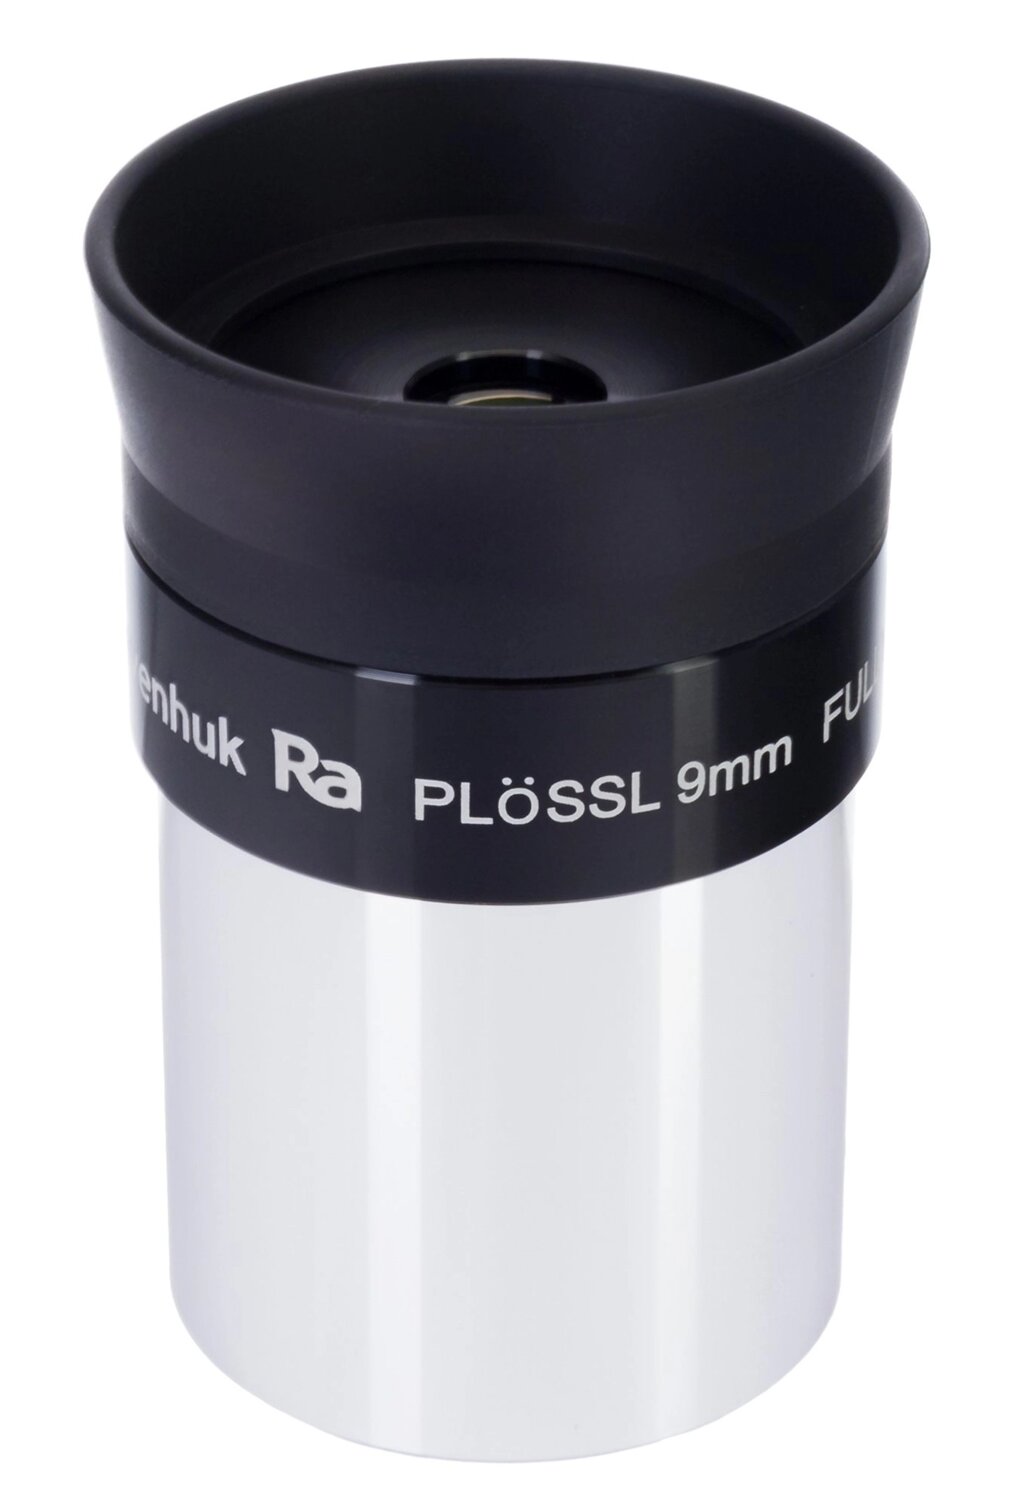 Окуляр Levenhuk Plössl 9 мм, 1,25" от компании ООО "АССЕРВИС" лабораторное оборудование и весы по низким ценам. - фото 1